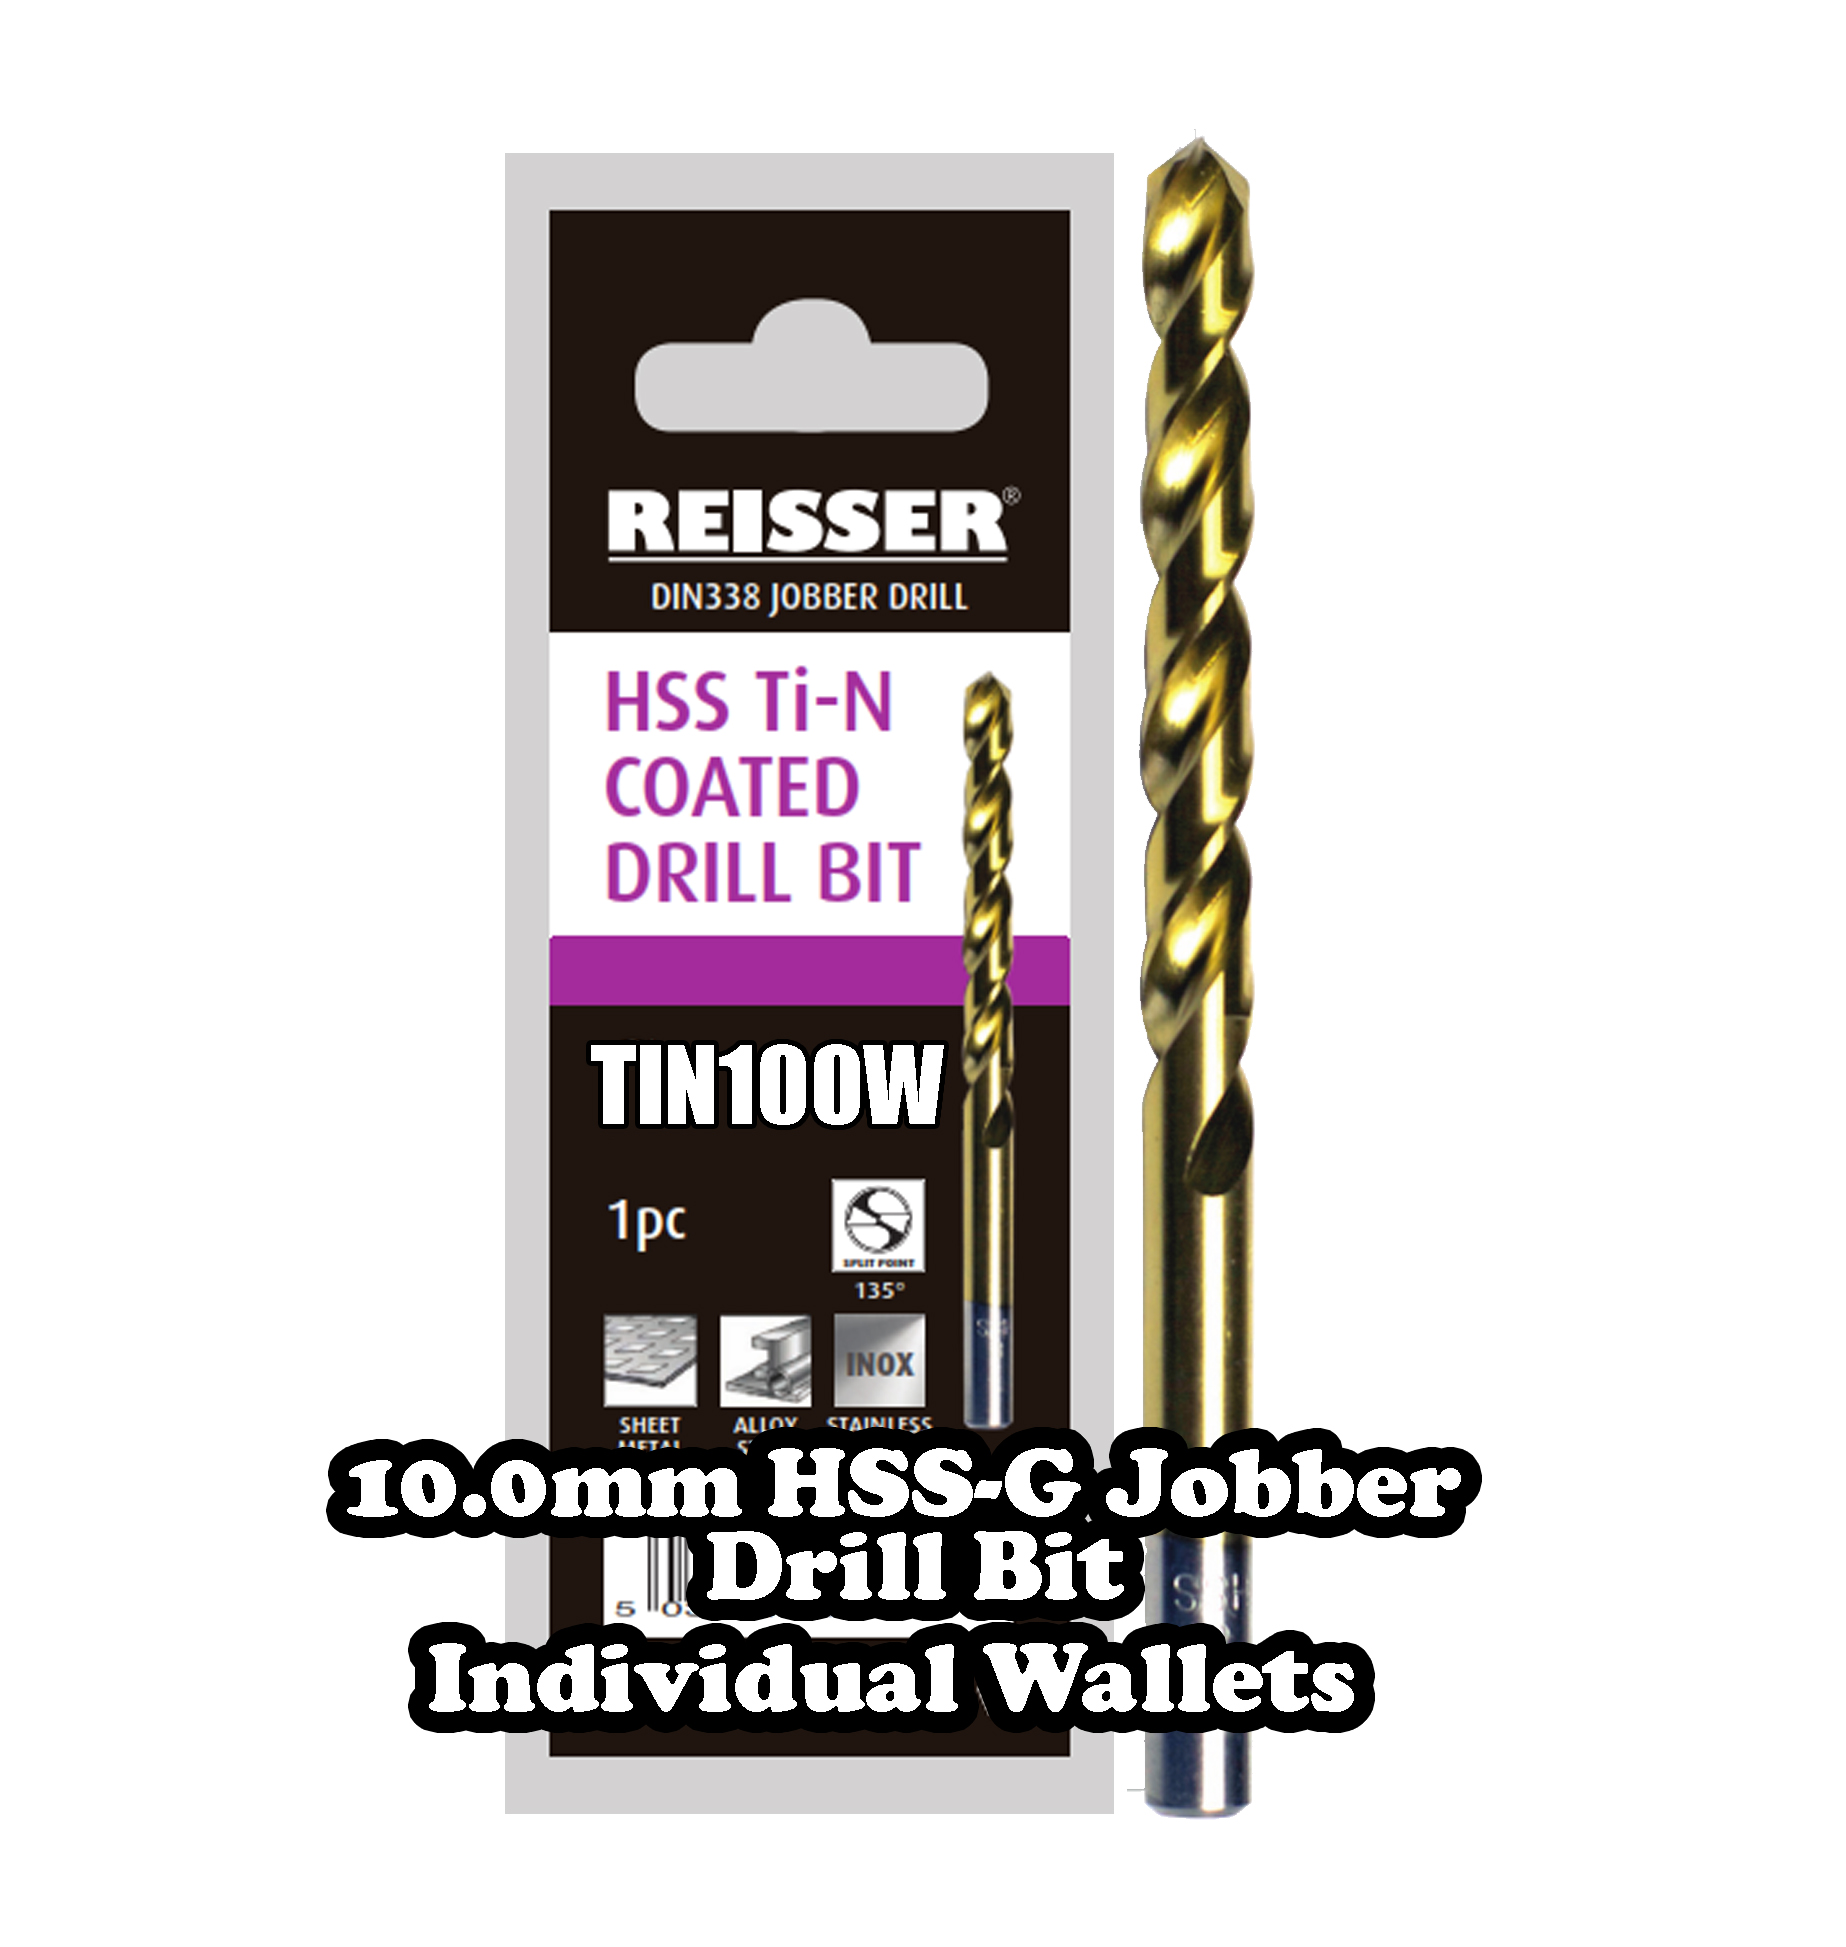 10.0mm HSS Jobber Drill Bit (SINGLE WALLET)